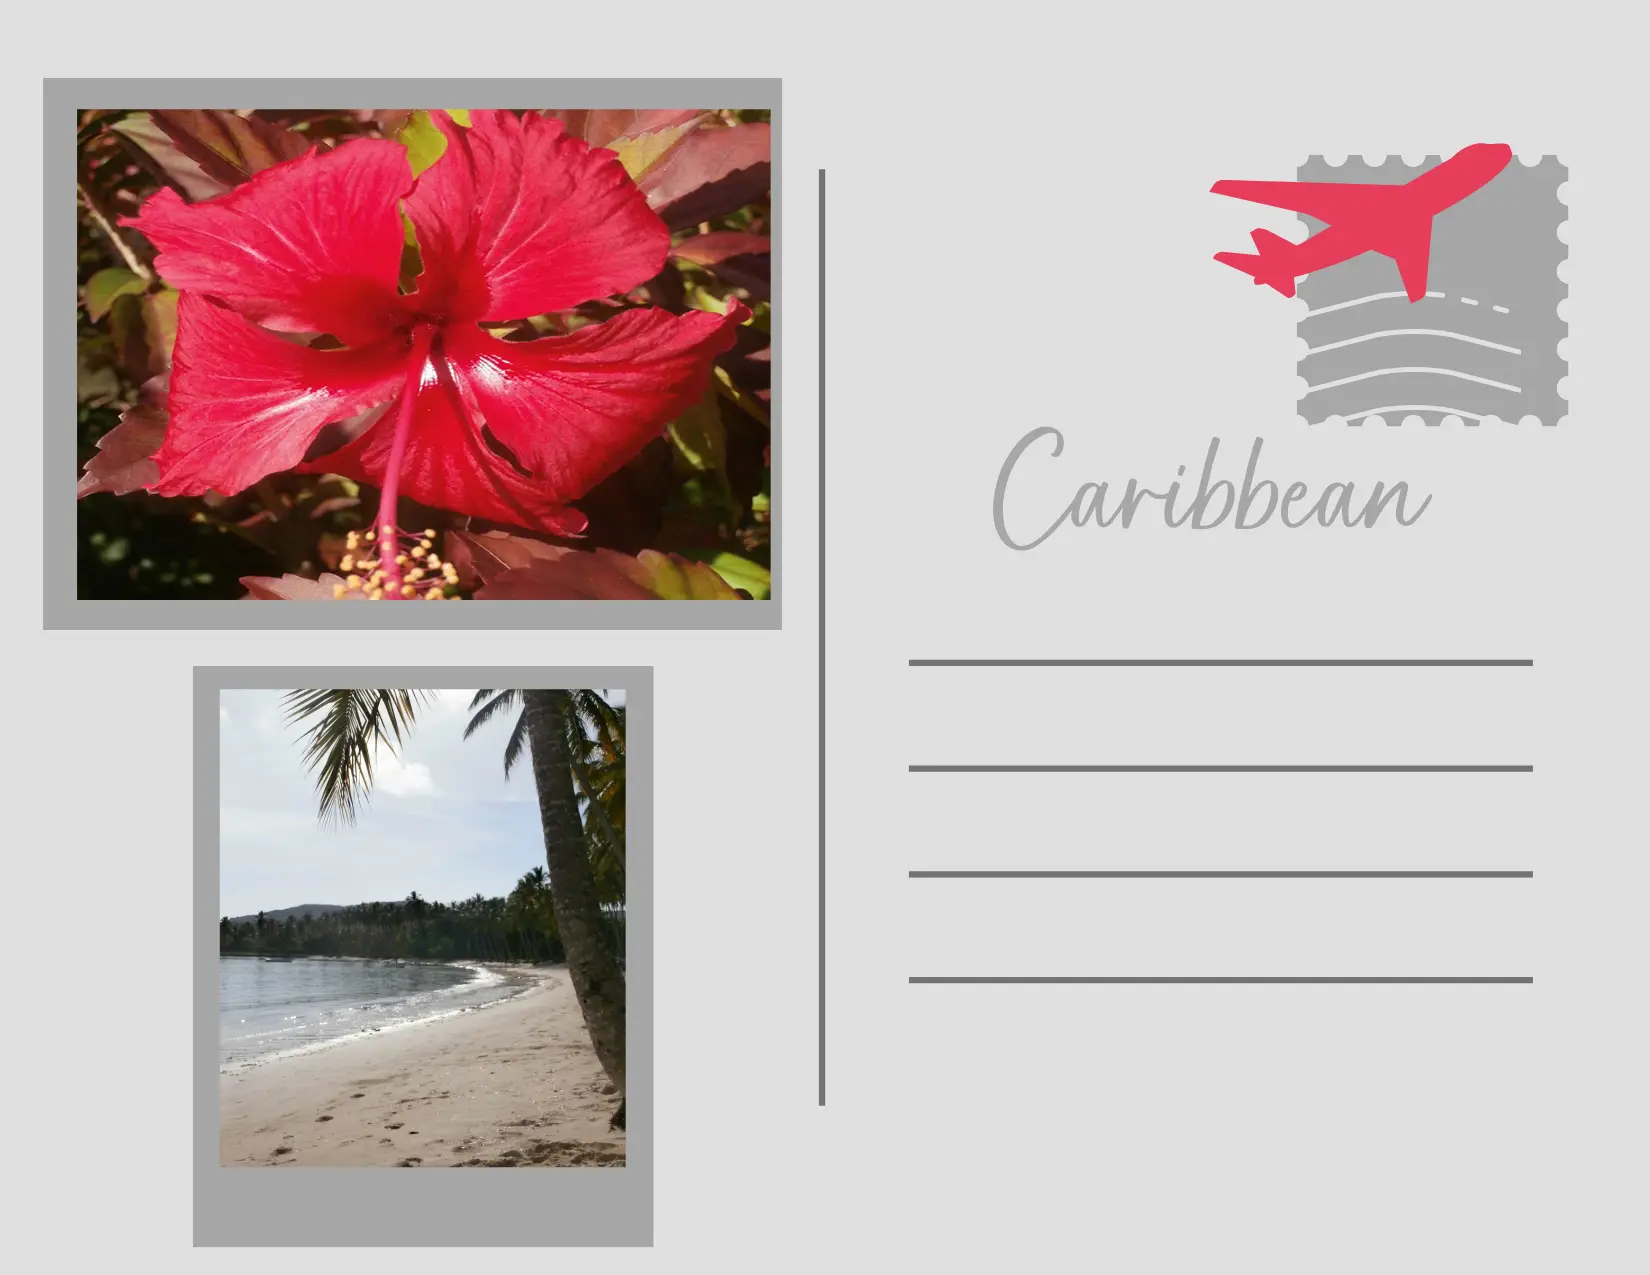 the Caribbean